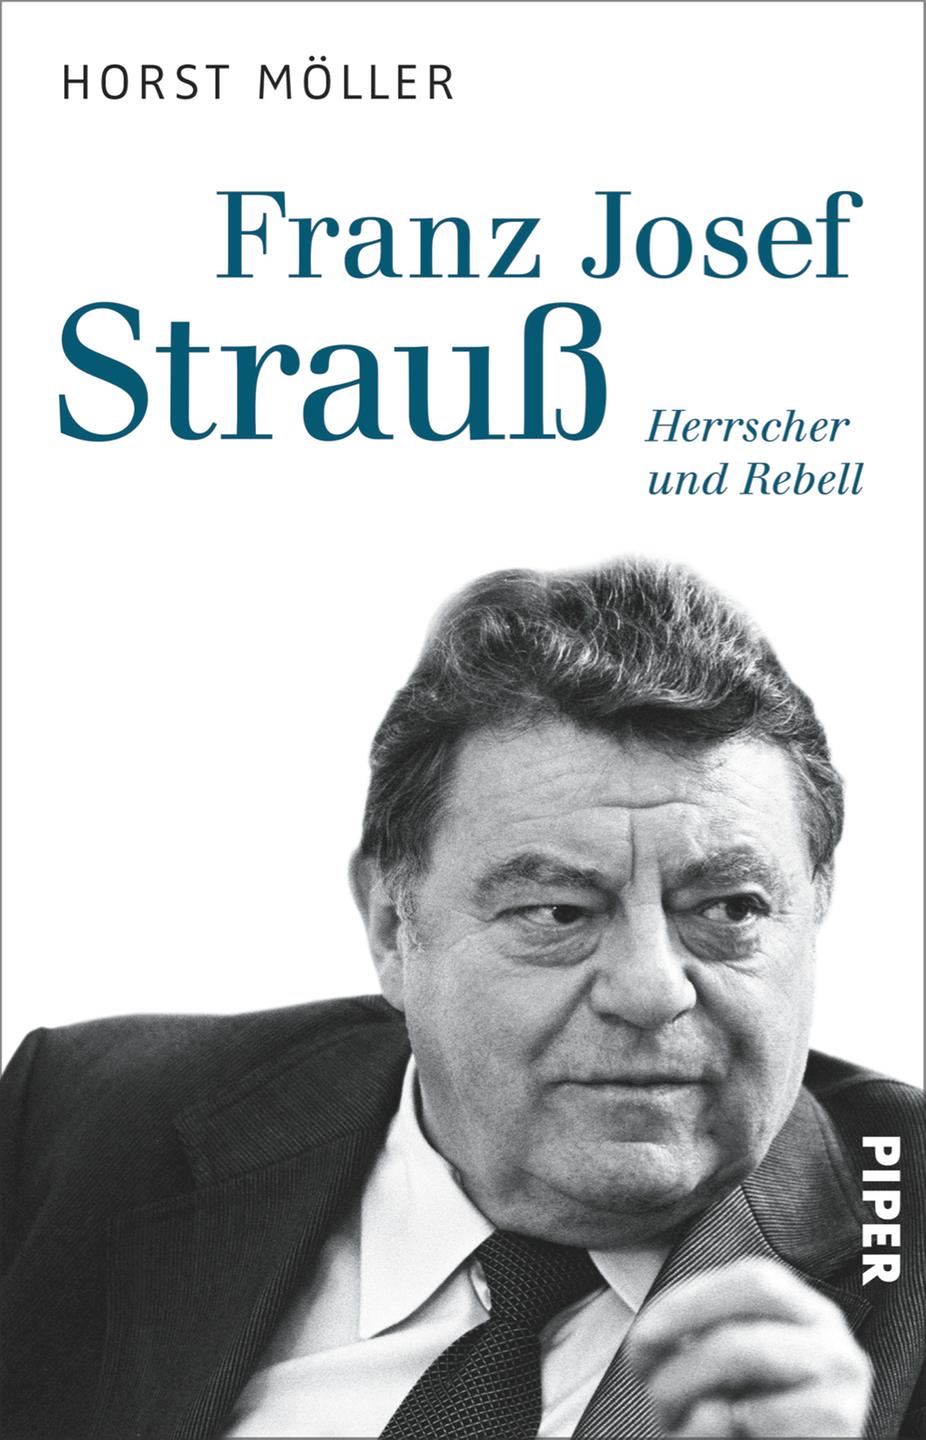 Cover Horst Möller "Franz Josef Strauß - Herrscher und Rebell"